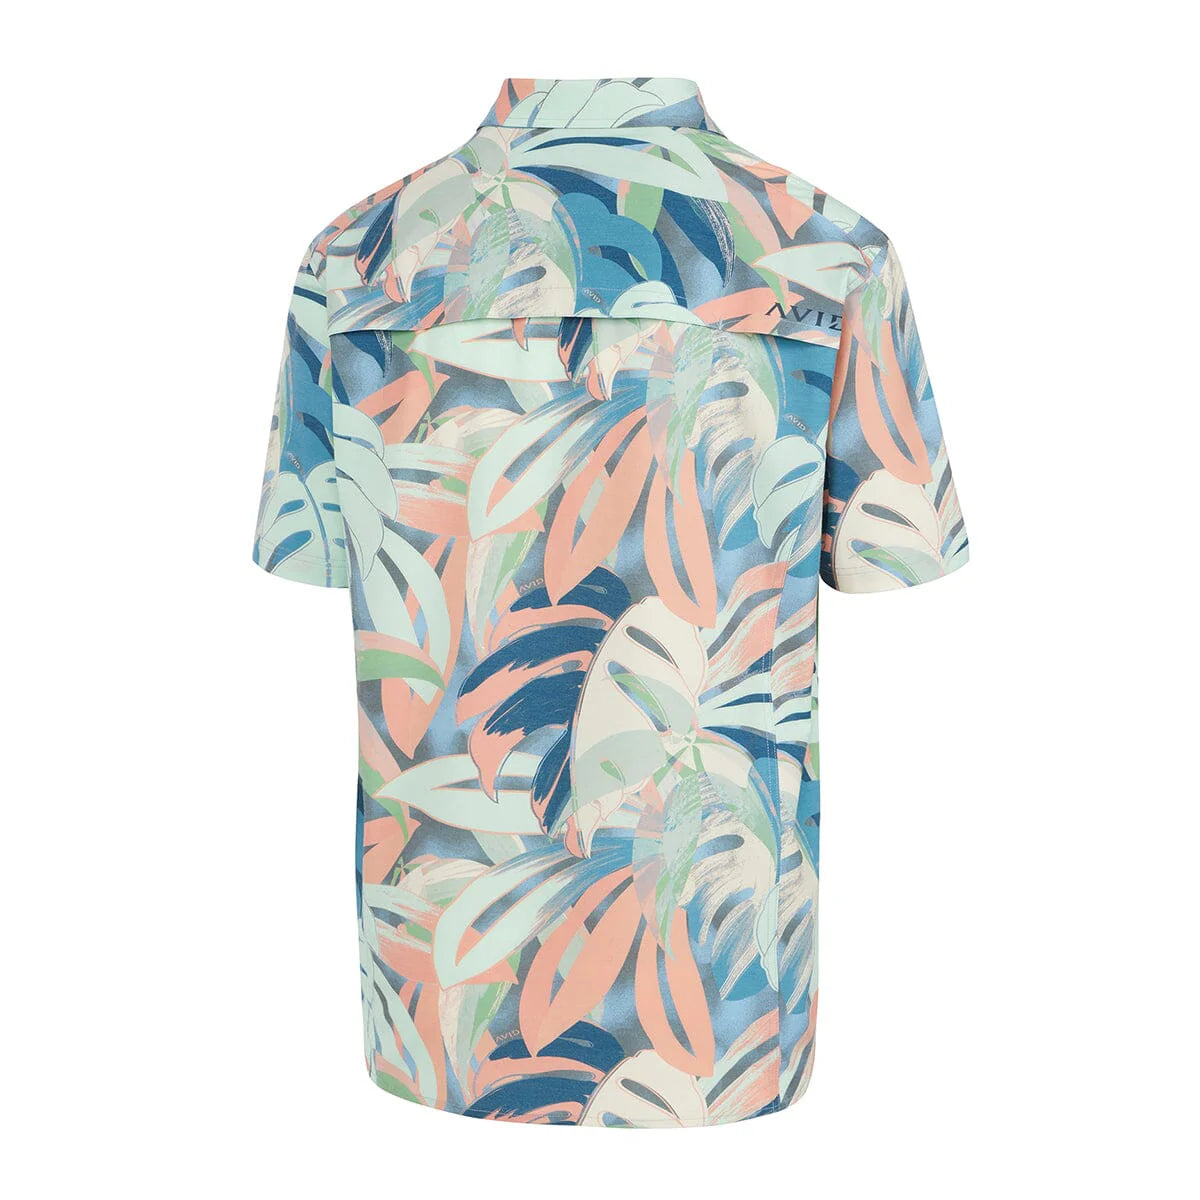 Palapa S/S Short Sleeve Shirt - Sanibel Blue